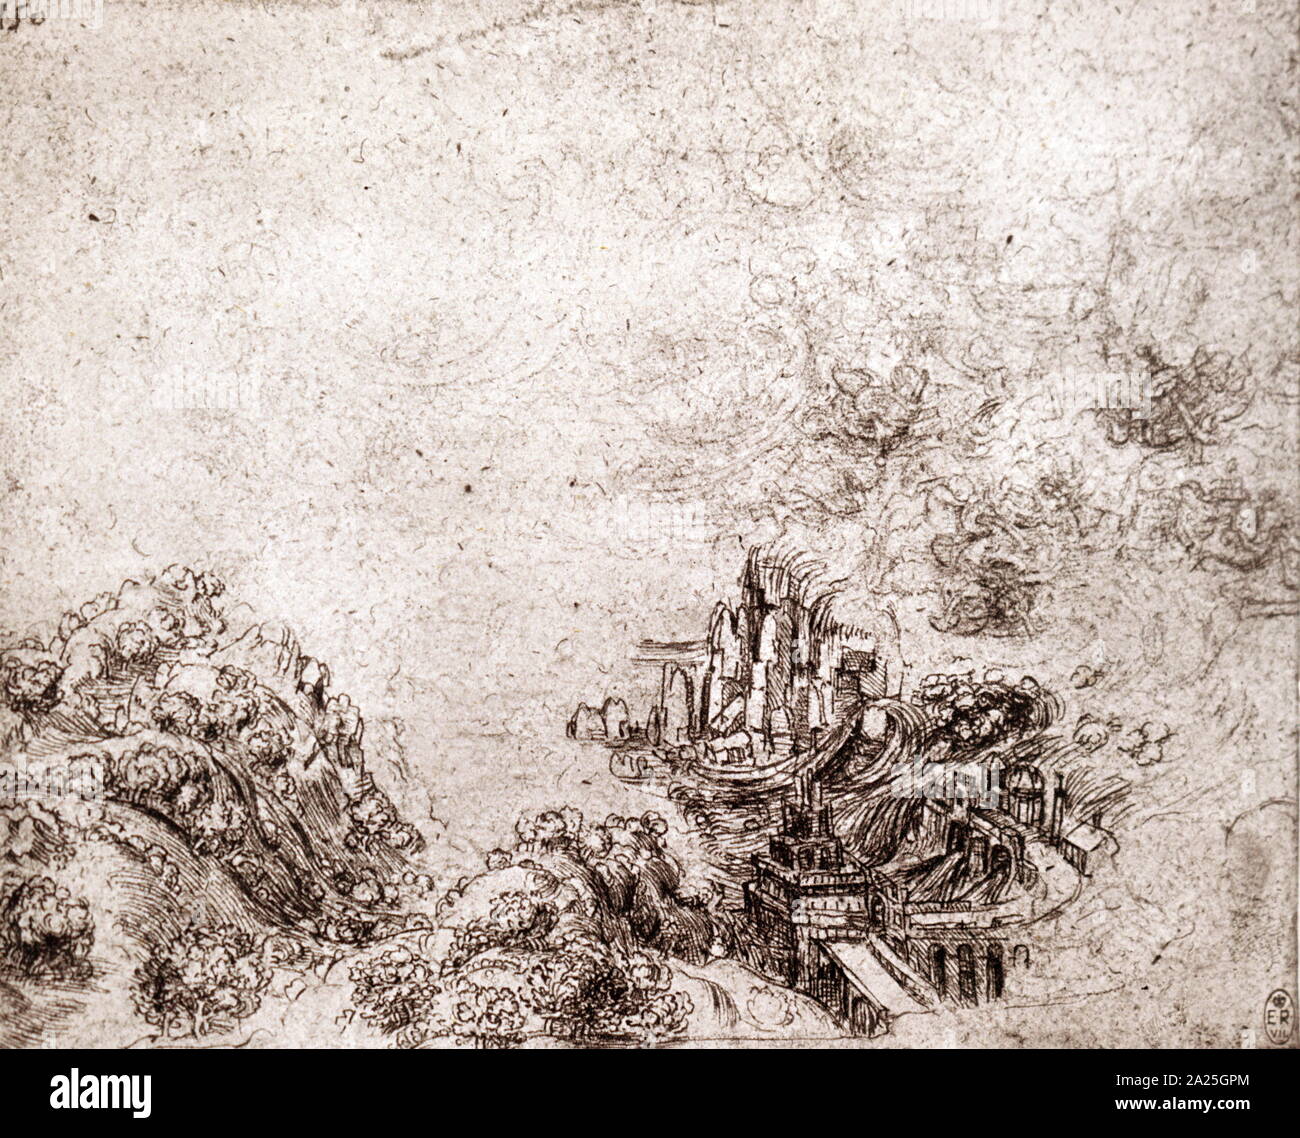 Sturm in einer geschlossenen Bucht von Leonardo da Vinci. Leonardo di ser Piero da Vinci (1452-1519), einem italienischen Universalgelehrten der Renaissance. Stockfoto